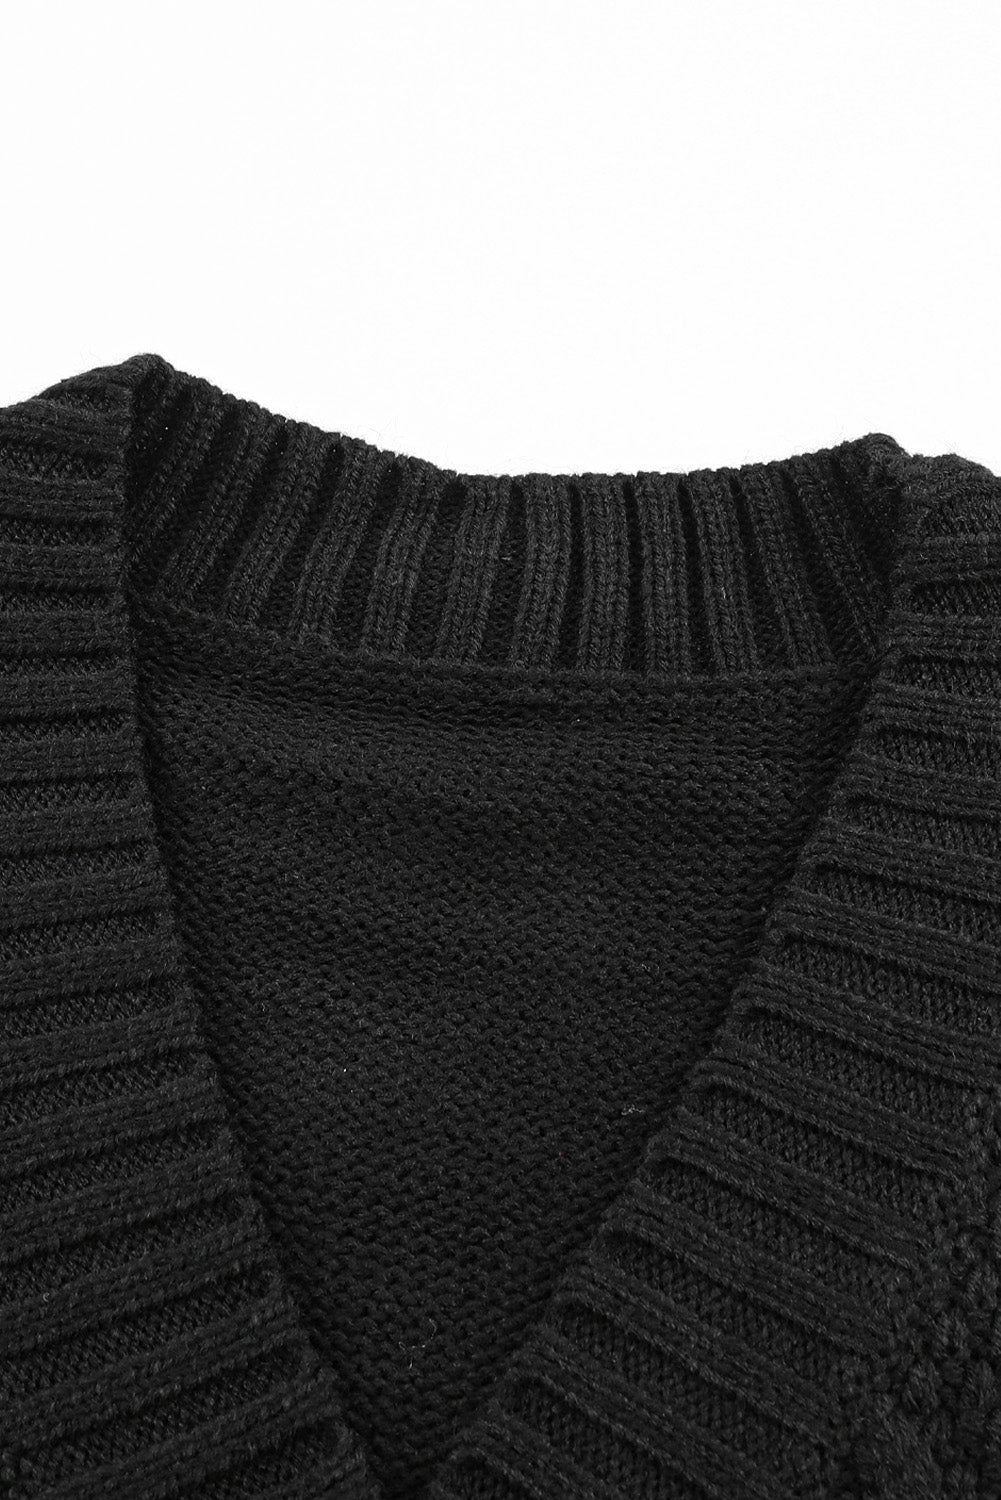 Črna teksturirana jopica s sprednjimi žepi in gumbi